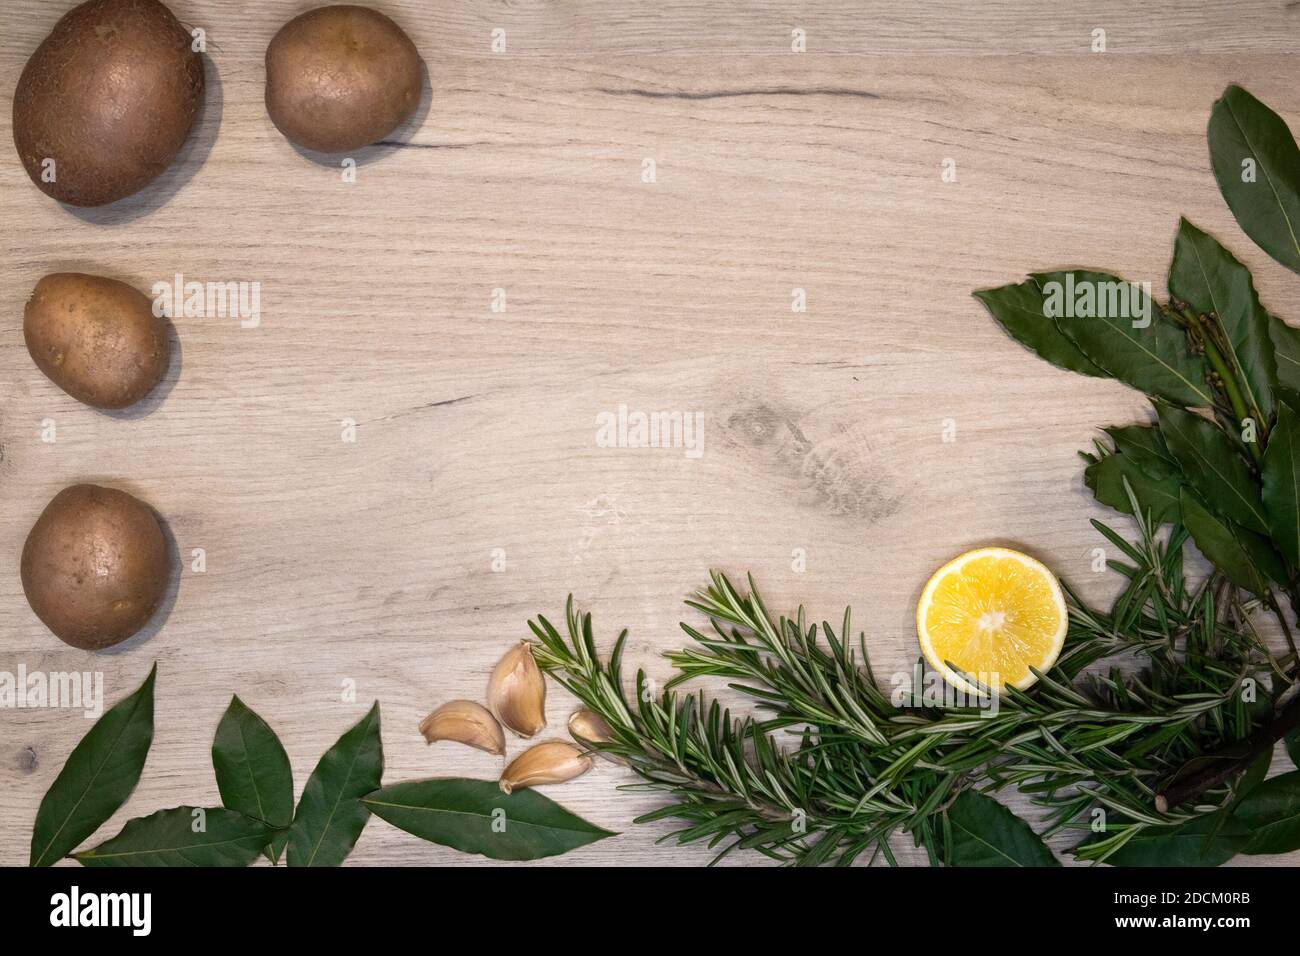 Helles Holzbrett mit frischen Rosmarinzweigen, Lorbeerblättern, Zitronenhälfte, Knoblauchzehen und wenigen rohen Kartoffeln, Design-Vorlage gerahmt Stockfoto